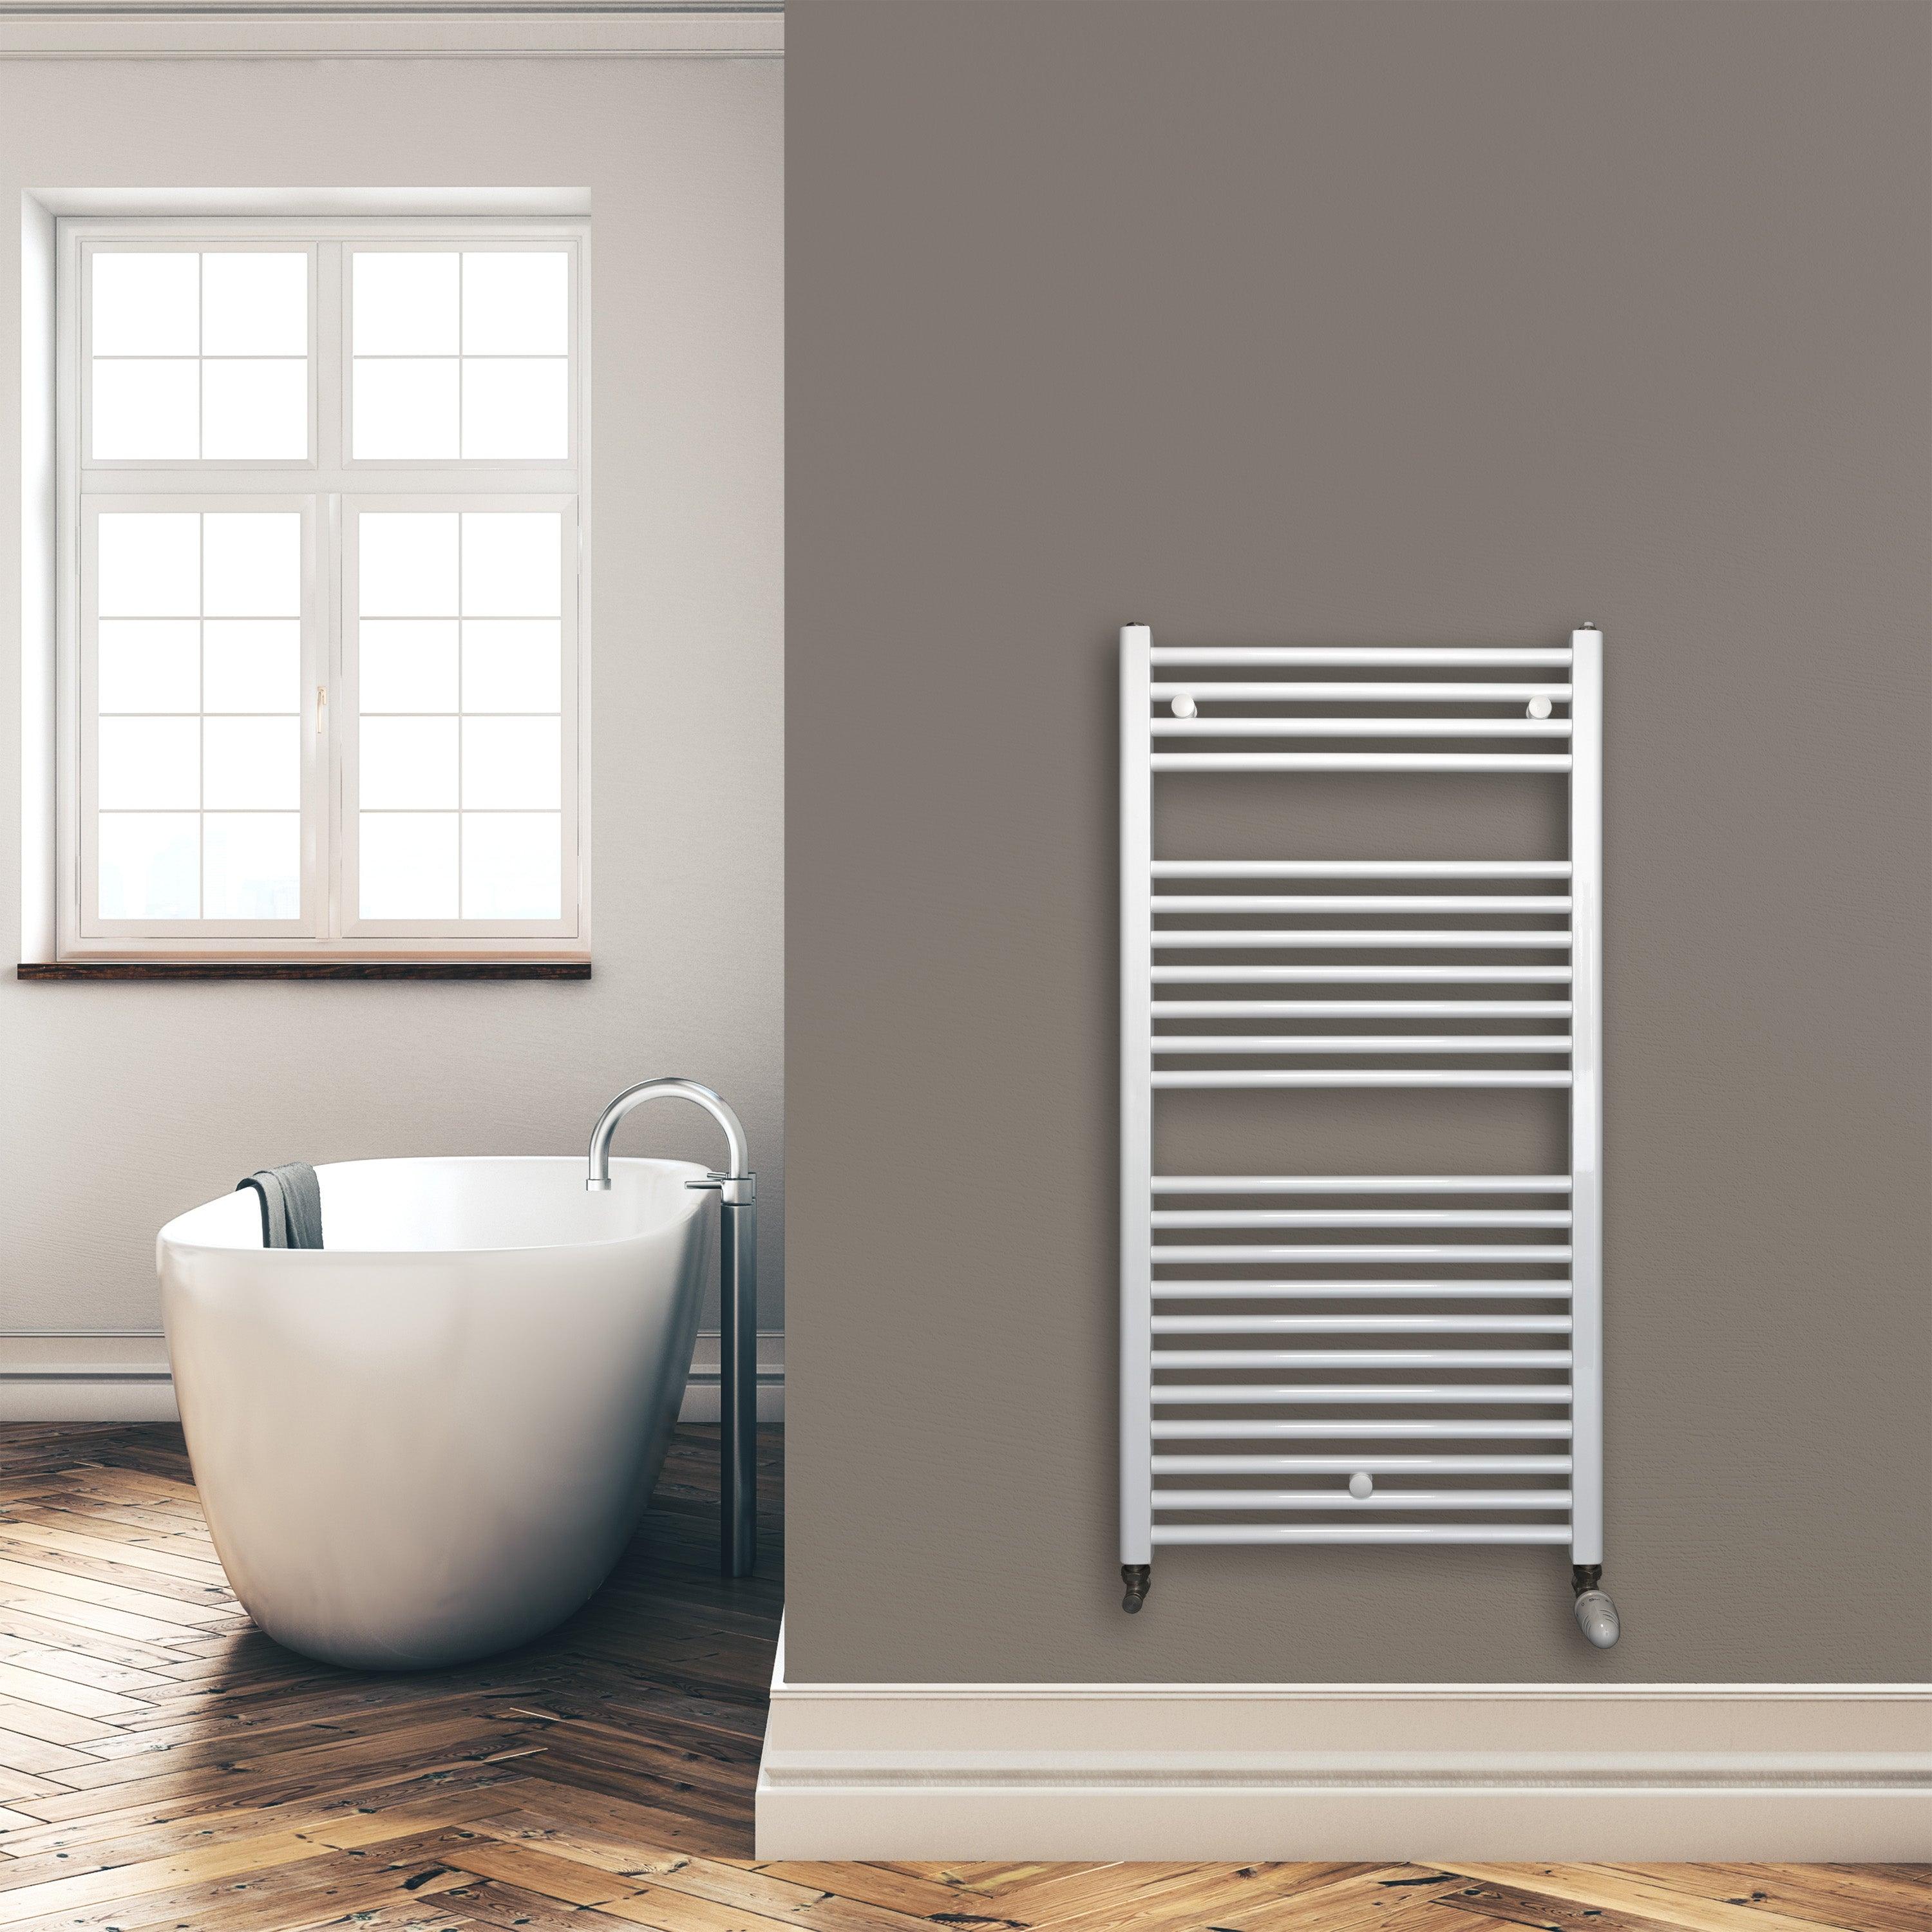 Badheizkörper 1160 x 600 mm gerade mit Standardanschluss Handtuchhalter Badezimmer Heizung Handtuchwärmer weiß Montagebeispiel - heizkoerper.shop